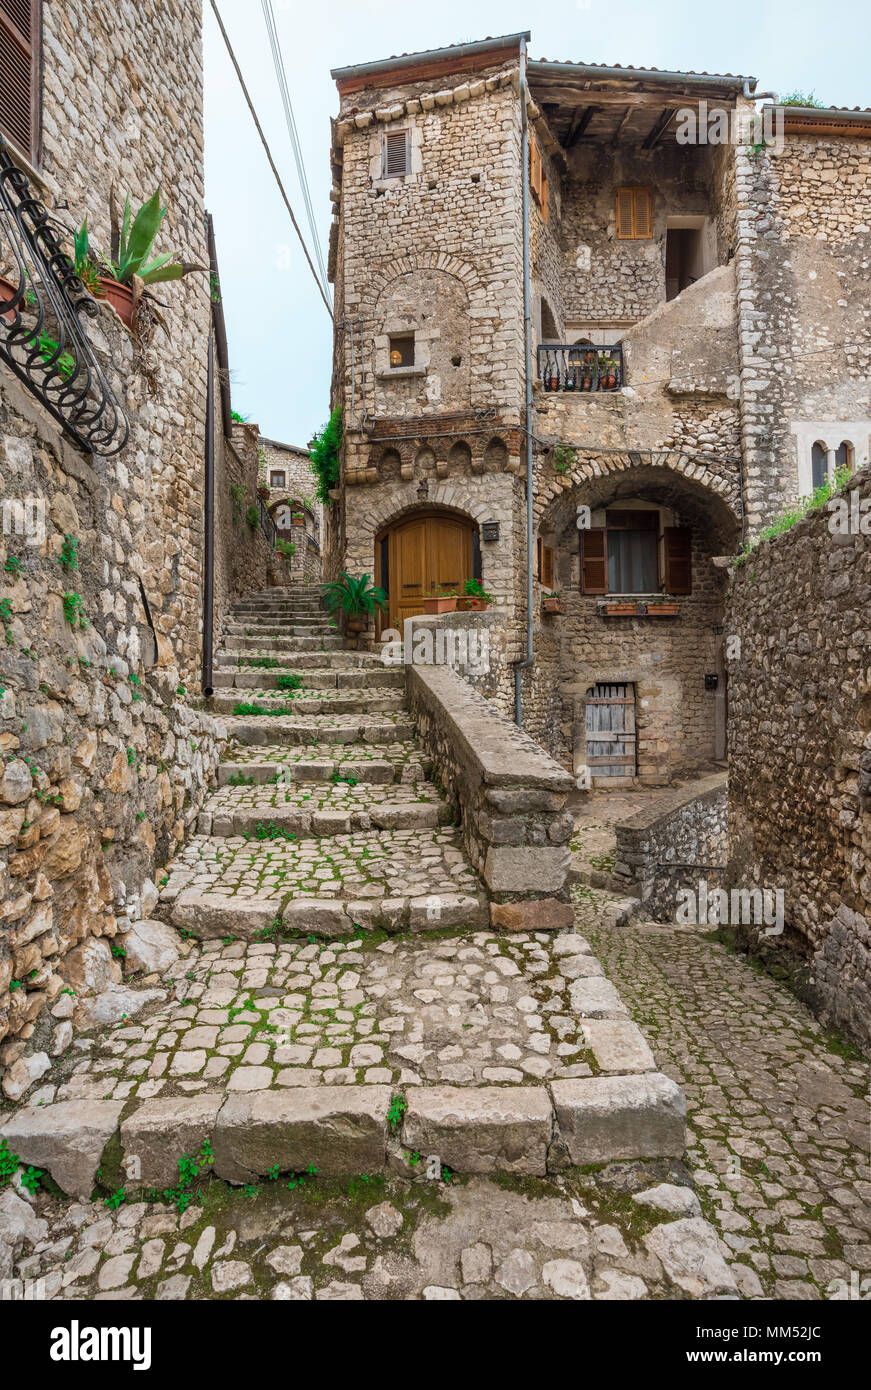 Sermoneta, Italia - un piccolo e bellissimo colle medievale cittadina in provincia di Latina, Regione Lazio, tutta in pietra con il famoso Castello Caetani Foto Stock